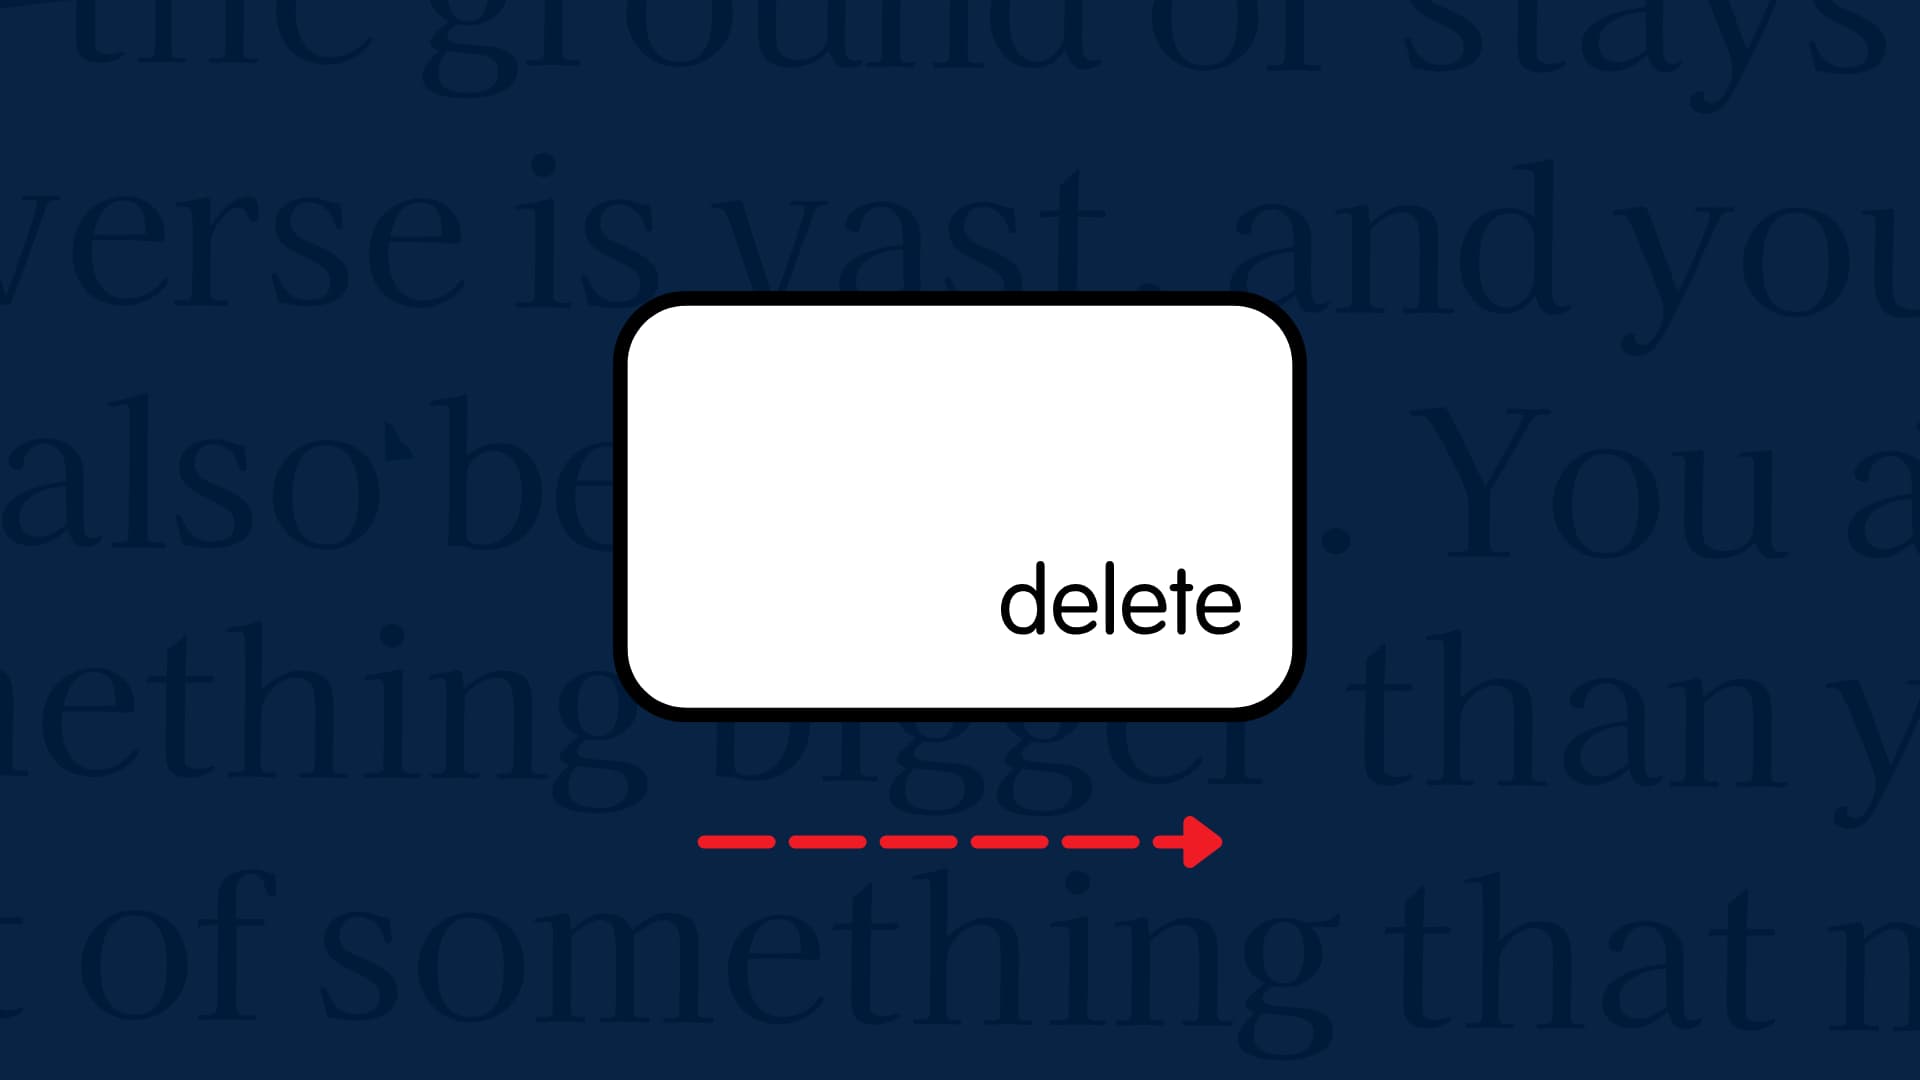 Keyboard delete key to show forward delete text on Mac